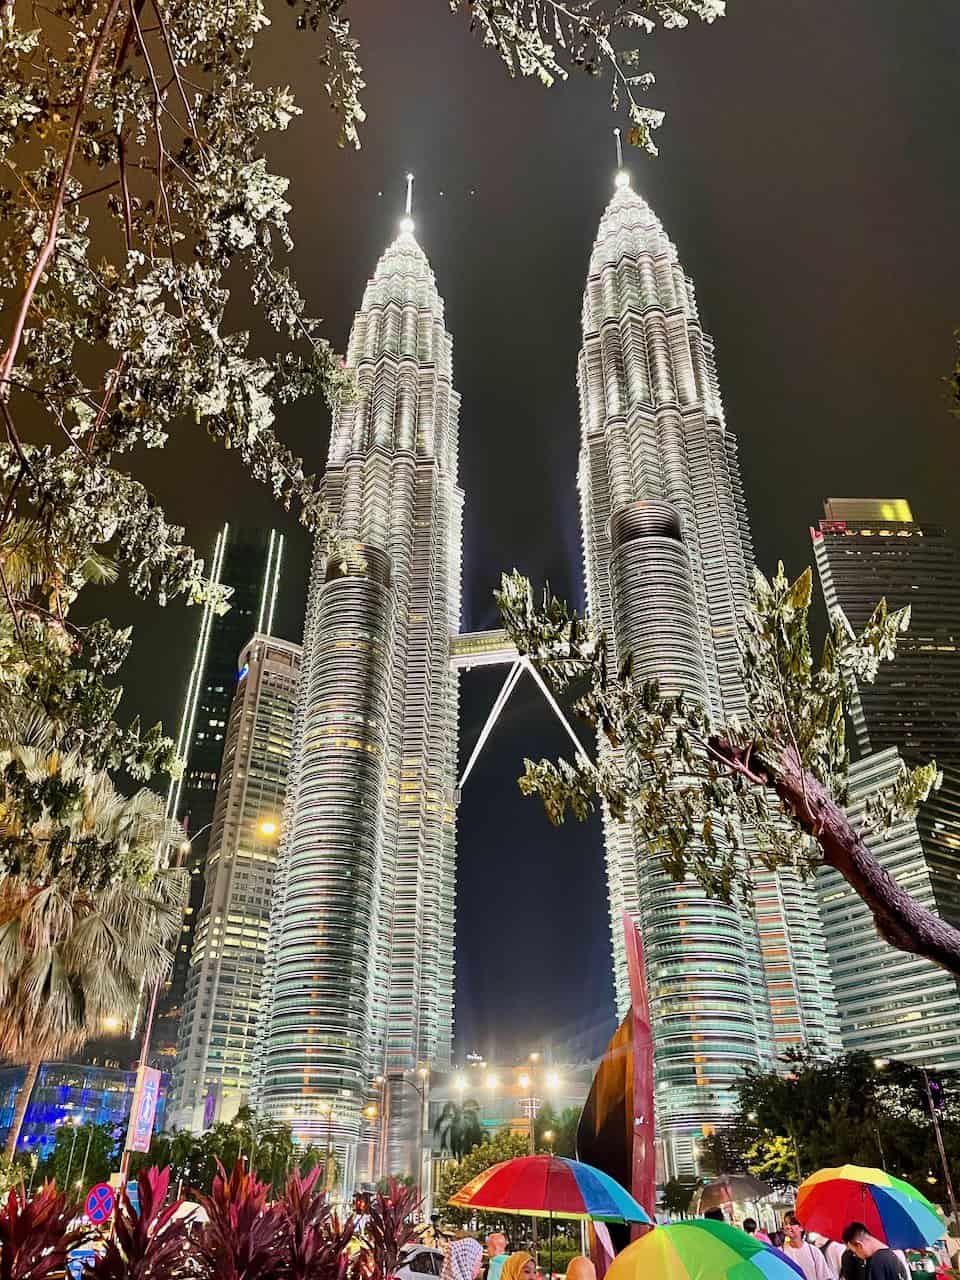 The glittering Petronas Towers in Kuala Lumpur, Malaysia